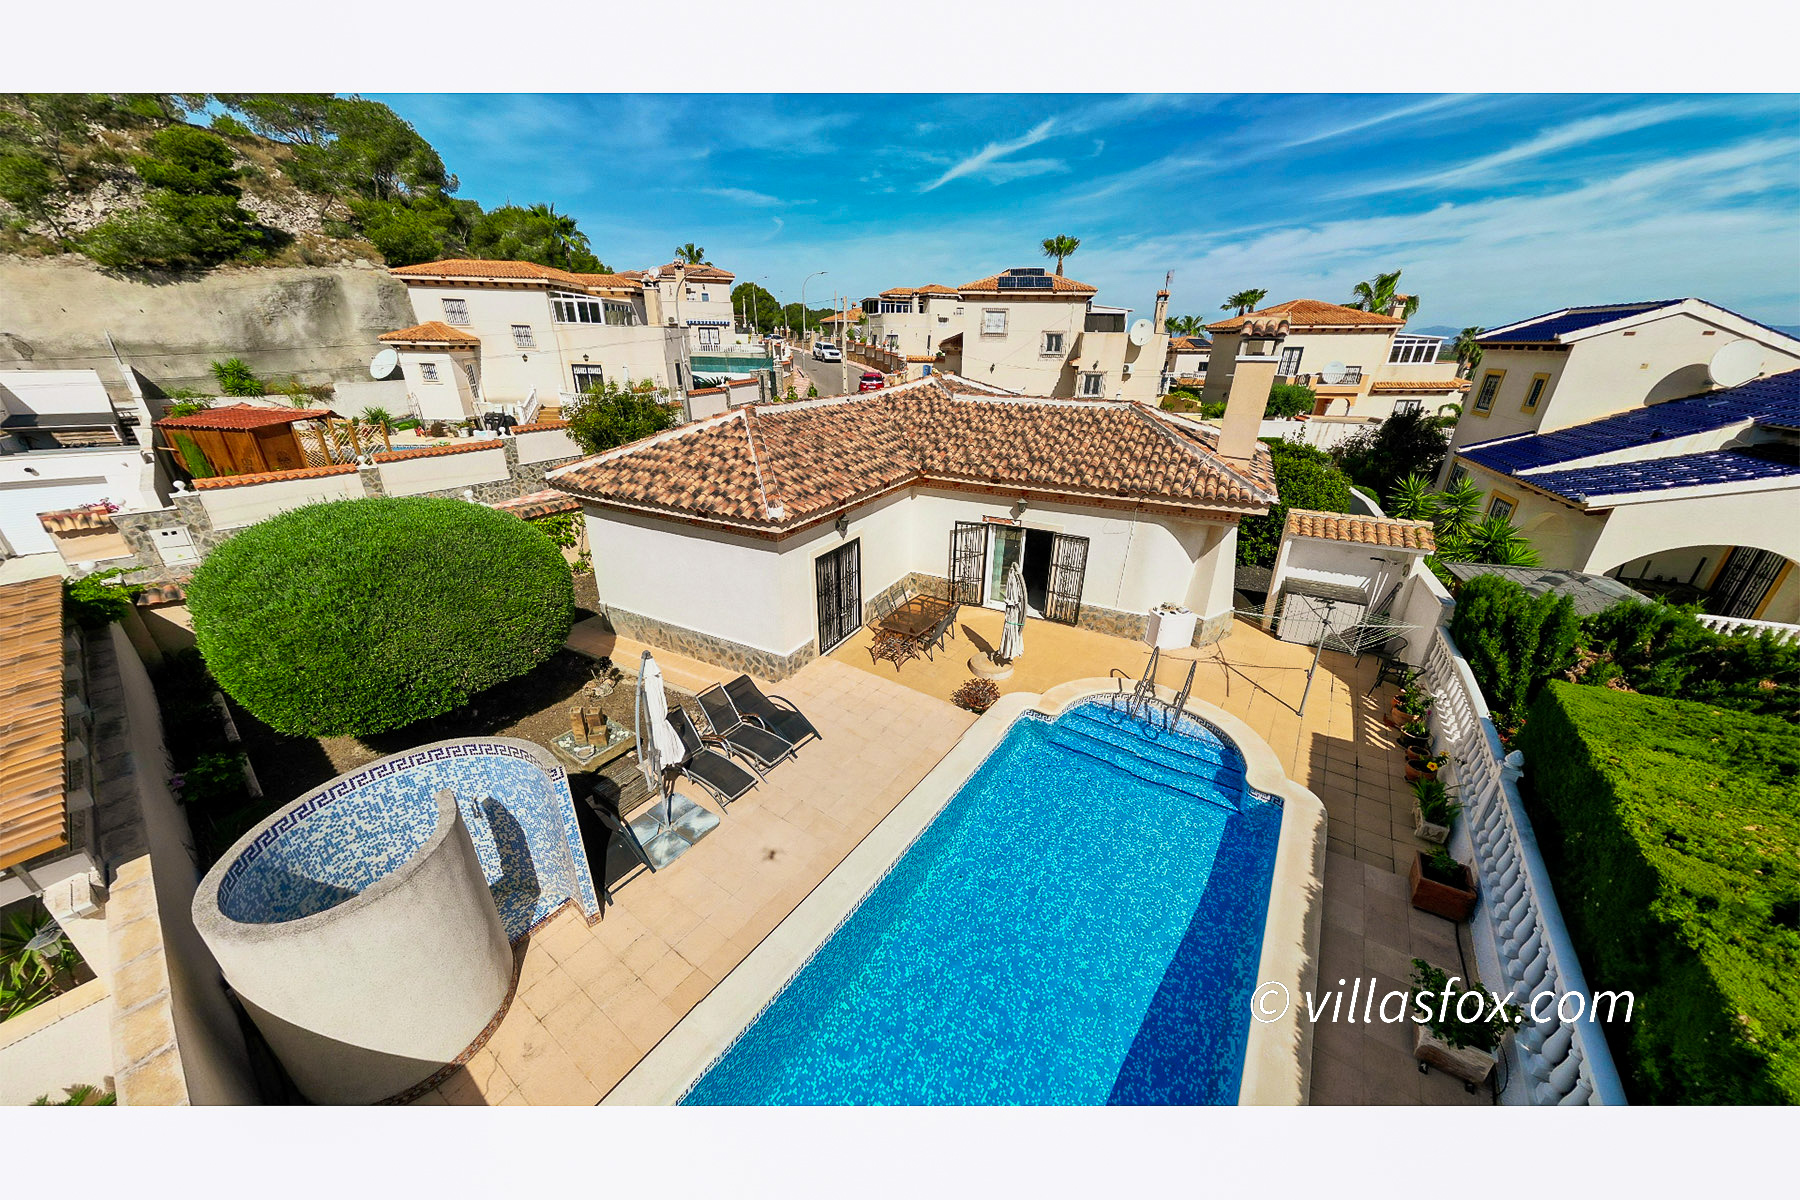 Villas María detached villa with private pool, 2 bedrooms, 2 bathrooms, exclusive location in San Miguel de Salinas